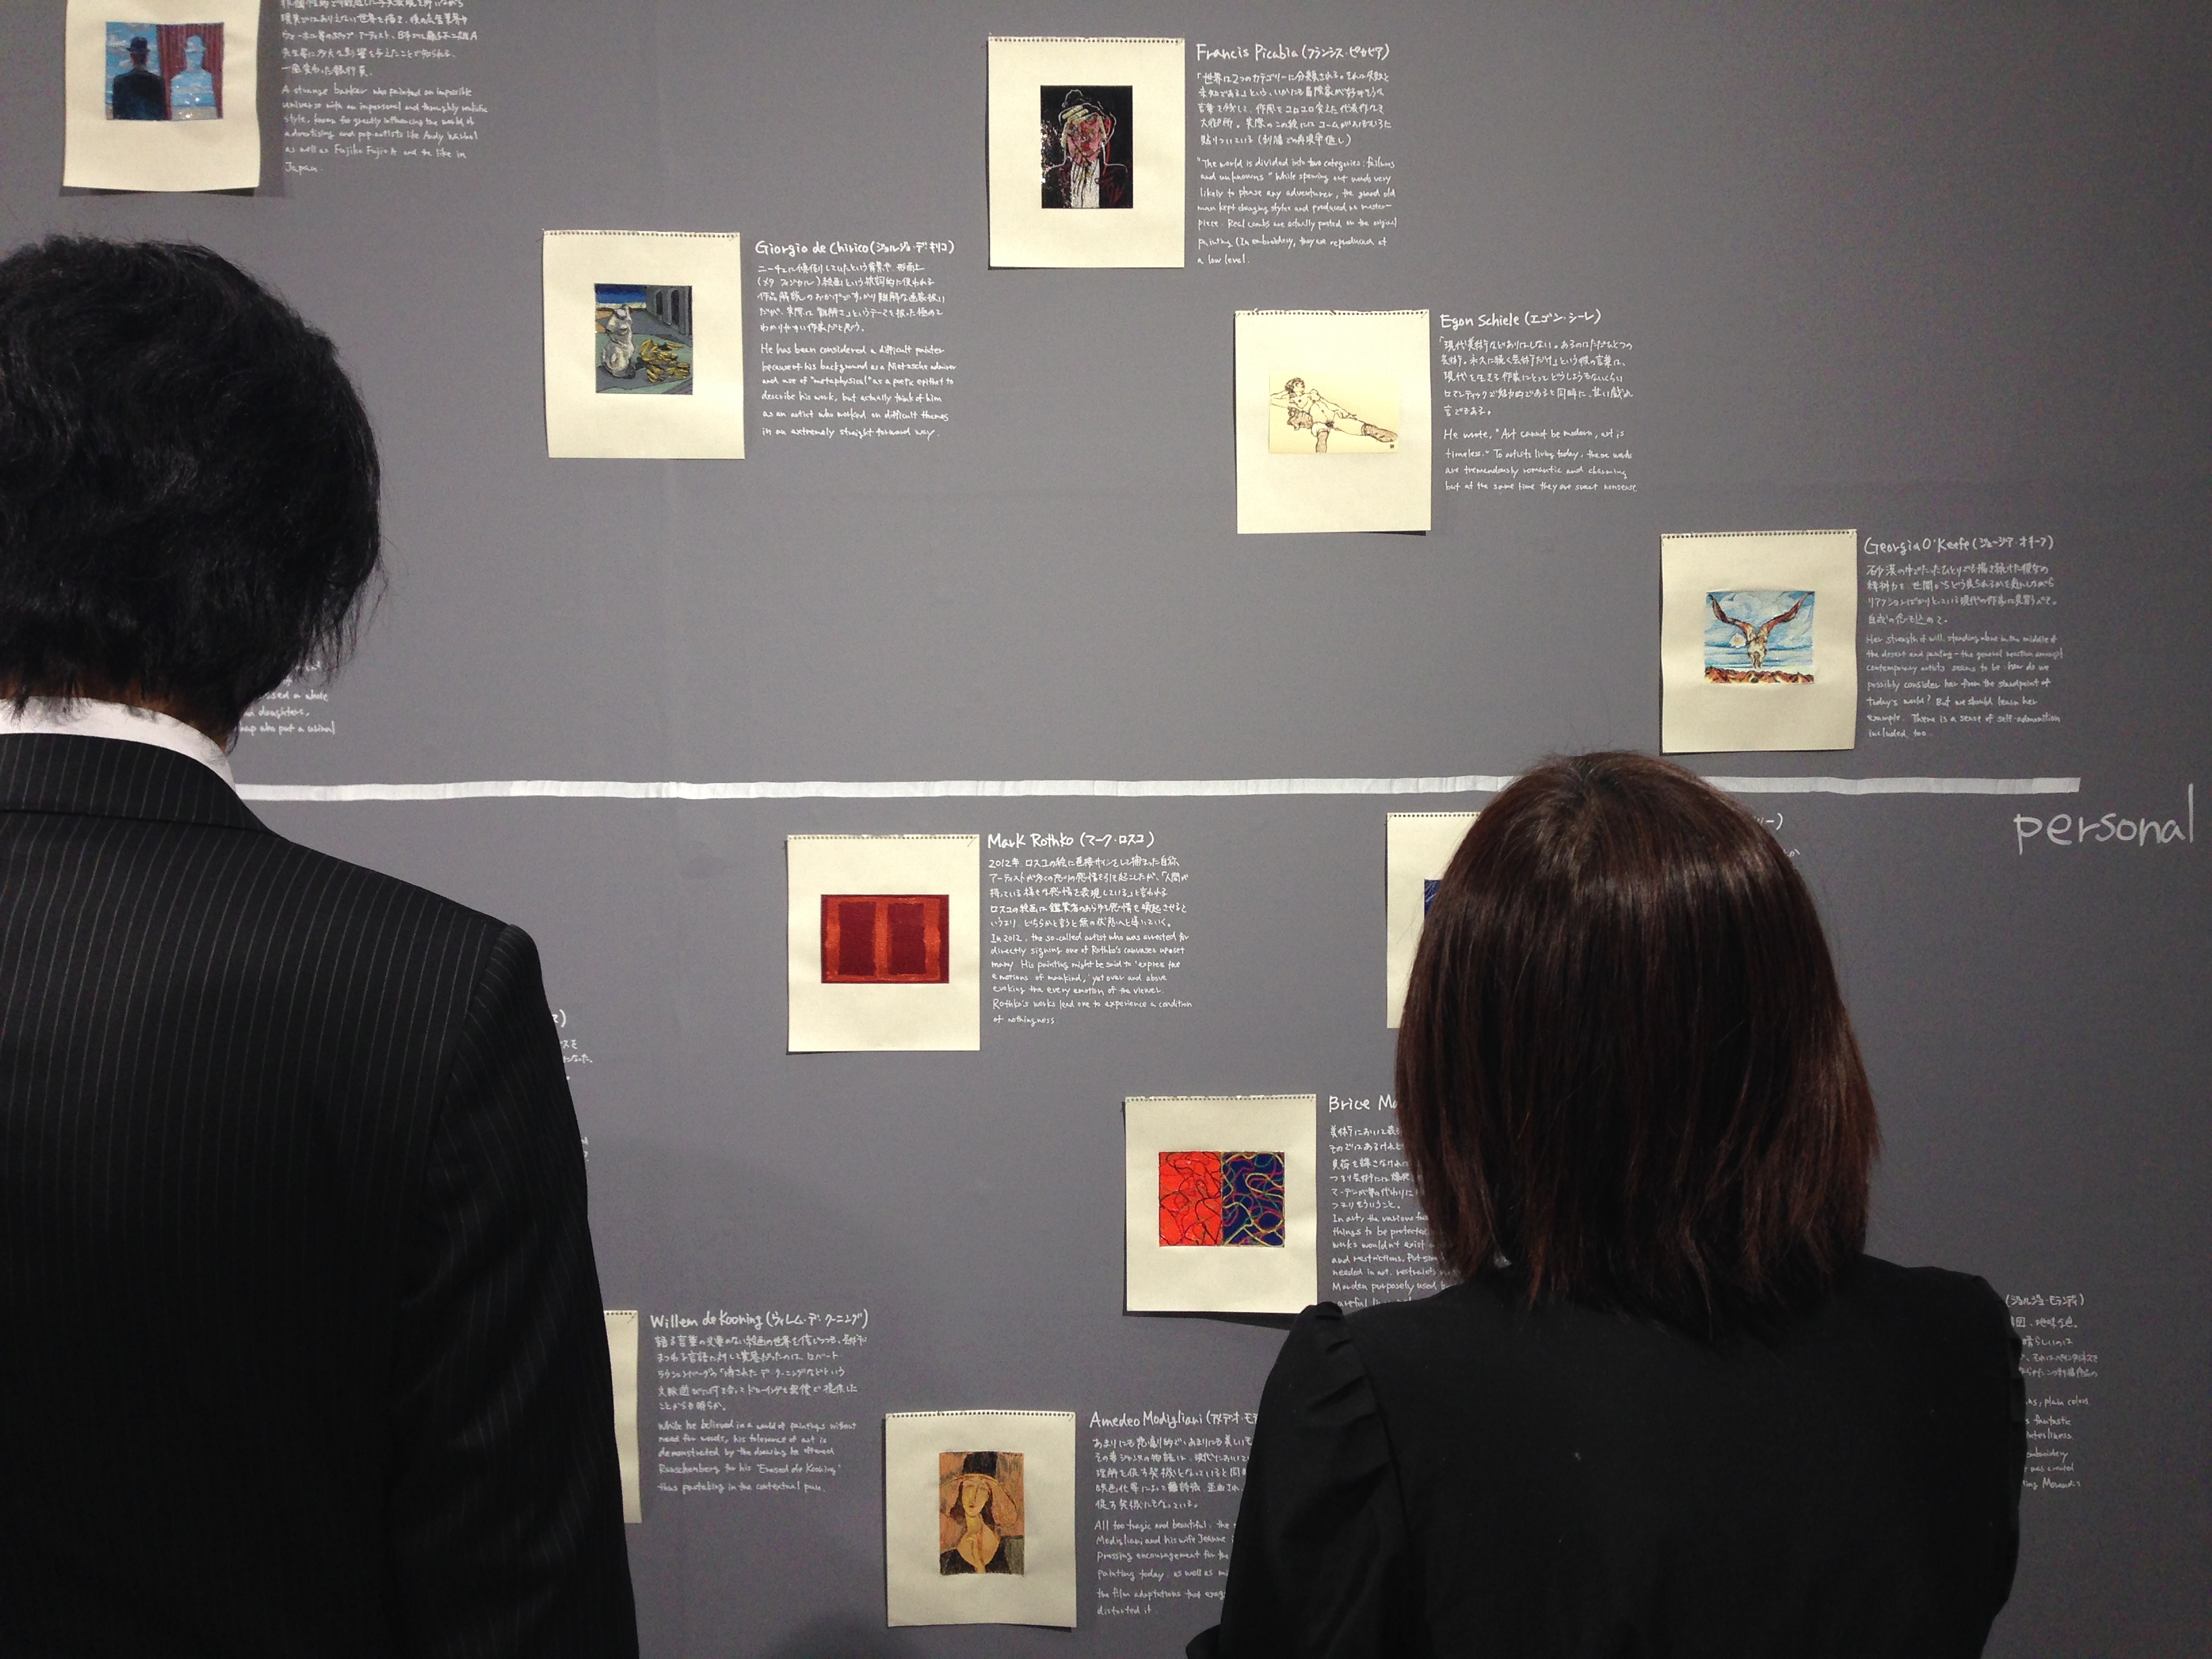 G-plusで出展のMizuma Art Gallery(L36)。刺しゅうによって絵画を再構築する青山悟の作品が一面に展示され好評をはくしていた。